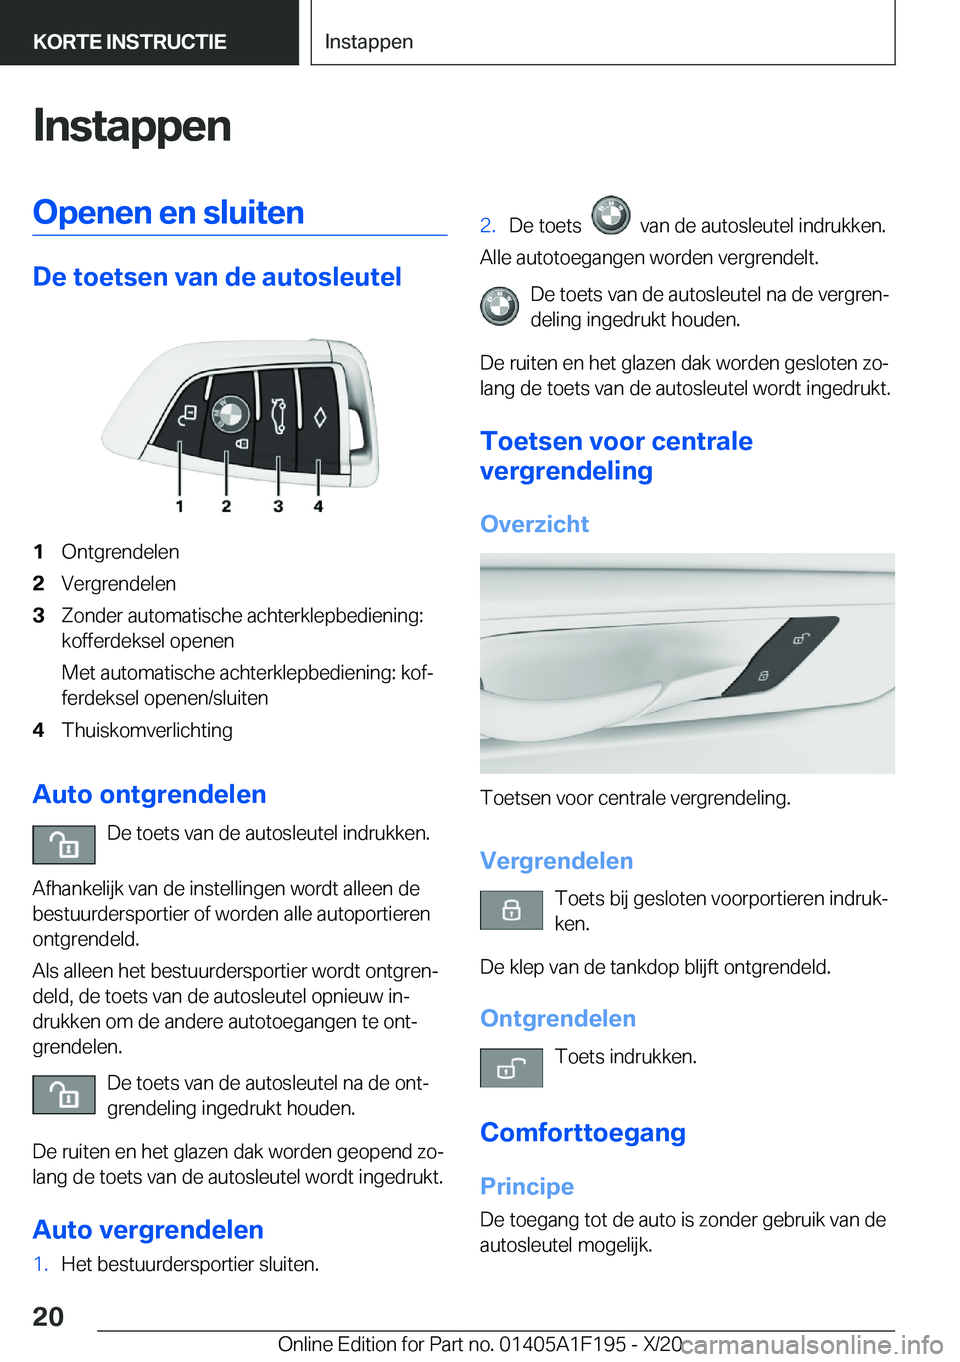 BMW M5 2021  Instructieboekjes (in Dutch) �I�n�s�t�a�p�p�e�n�O�p�e�n�e�n��e�n��s�l�u�i�t�e�n
�D�e��t�o�e�t�s�e�n��v�a�n��d�e��a�u�t�o�s�l�e�u�t�e�l
�1�O�n�t�g�r�e�n�d�e�l�e�n�2�V�e�r�g�r�e�n�d�e�l�e�n�3�Z�o�n�d�e�r��a�u�t�o�m�a�t�i�s�c